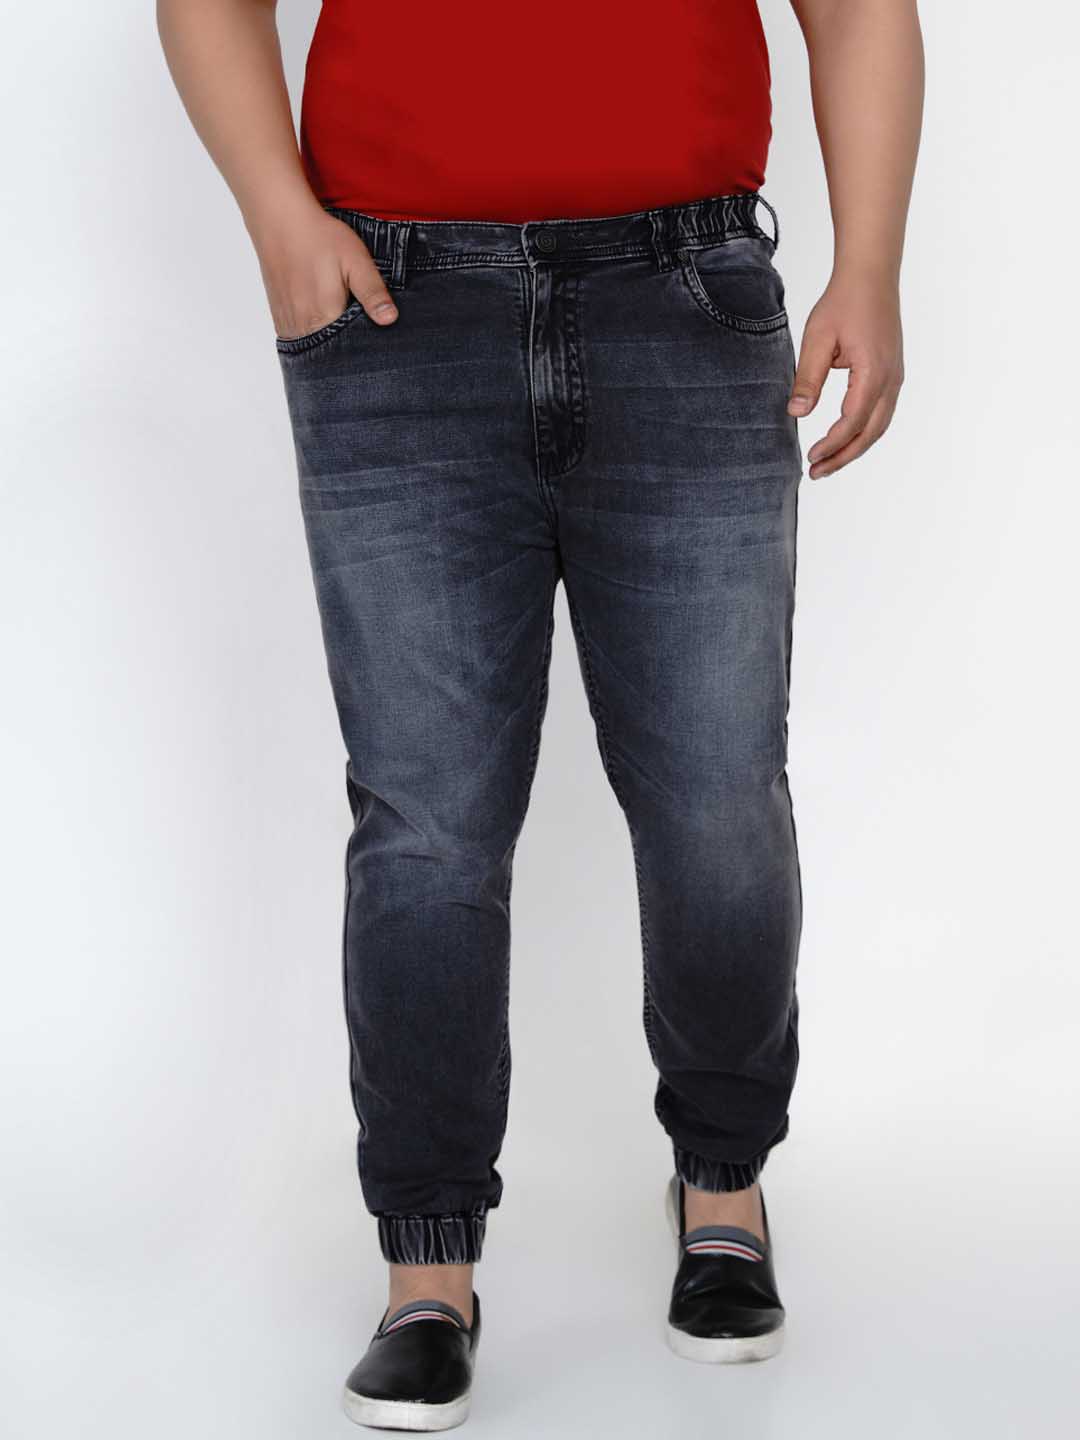 bottomwear/jeans/JPJ12135/jpj12135-3.jpg